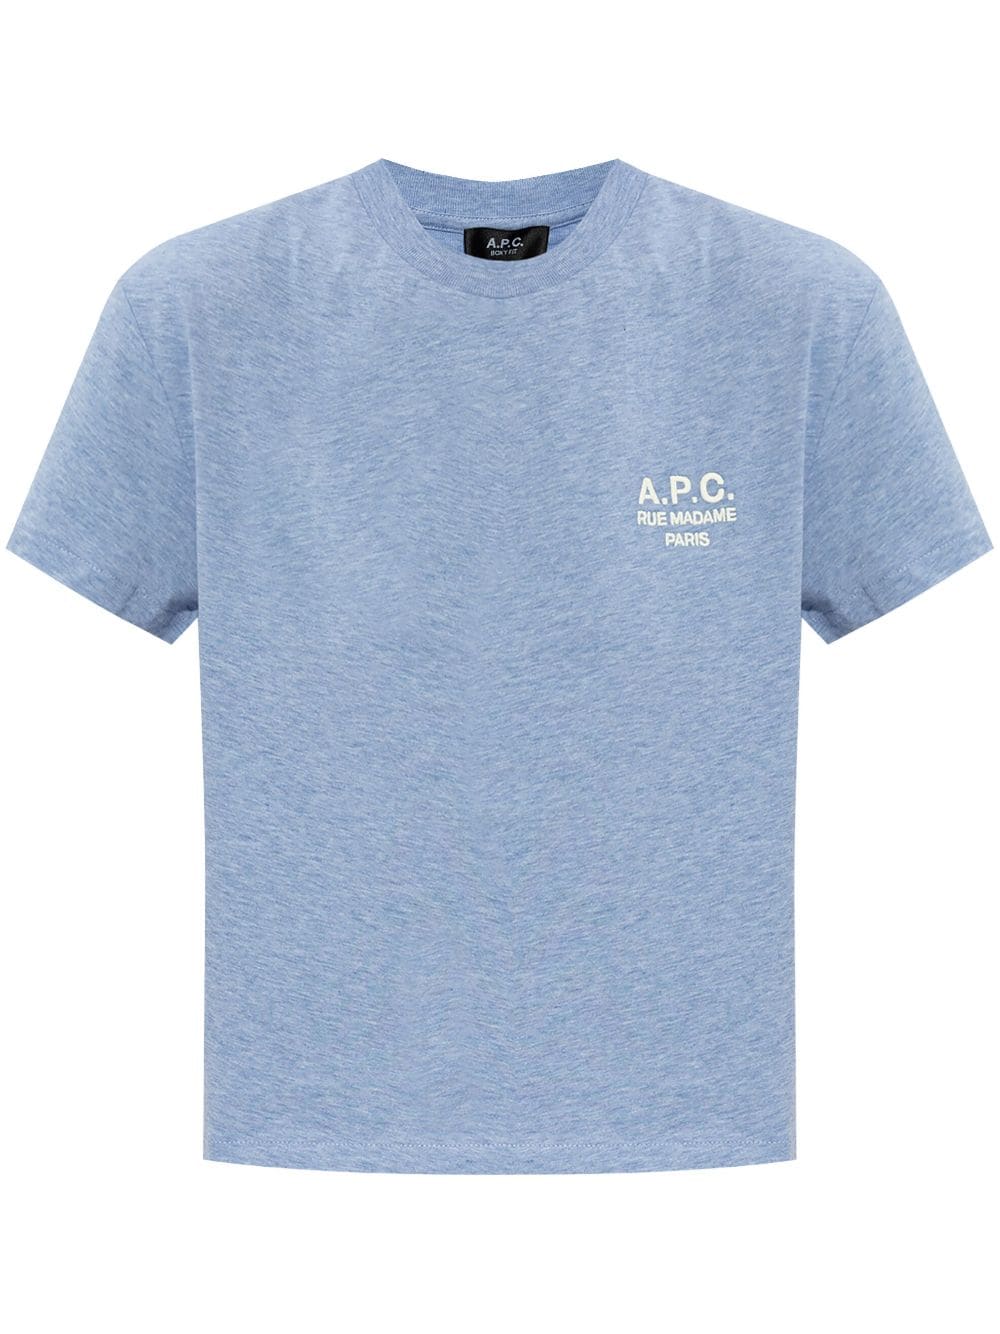 A.P.C. Cotton T-Shirt - Blue von A.P.C.